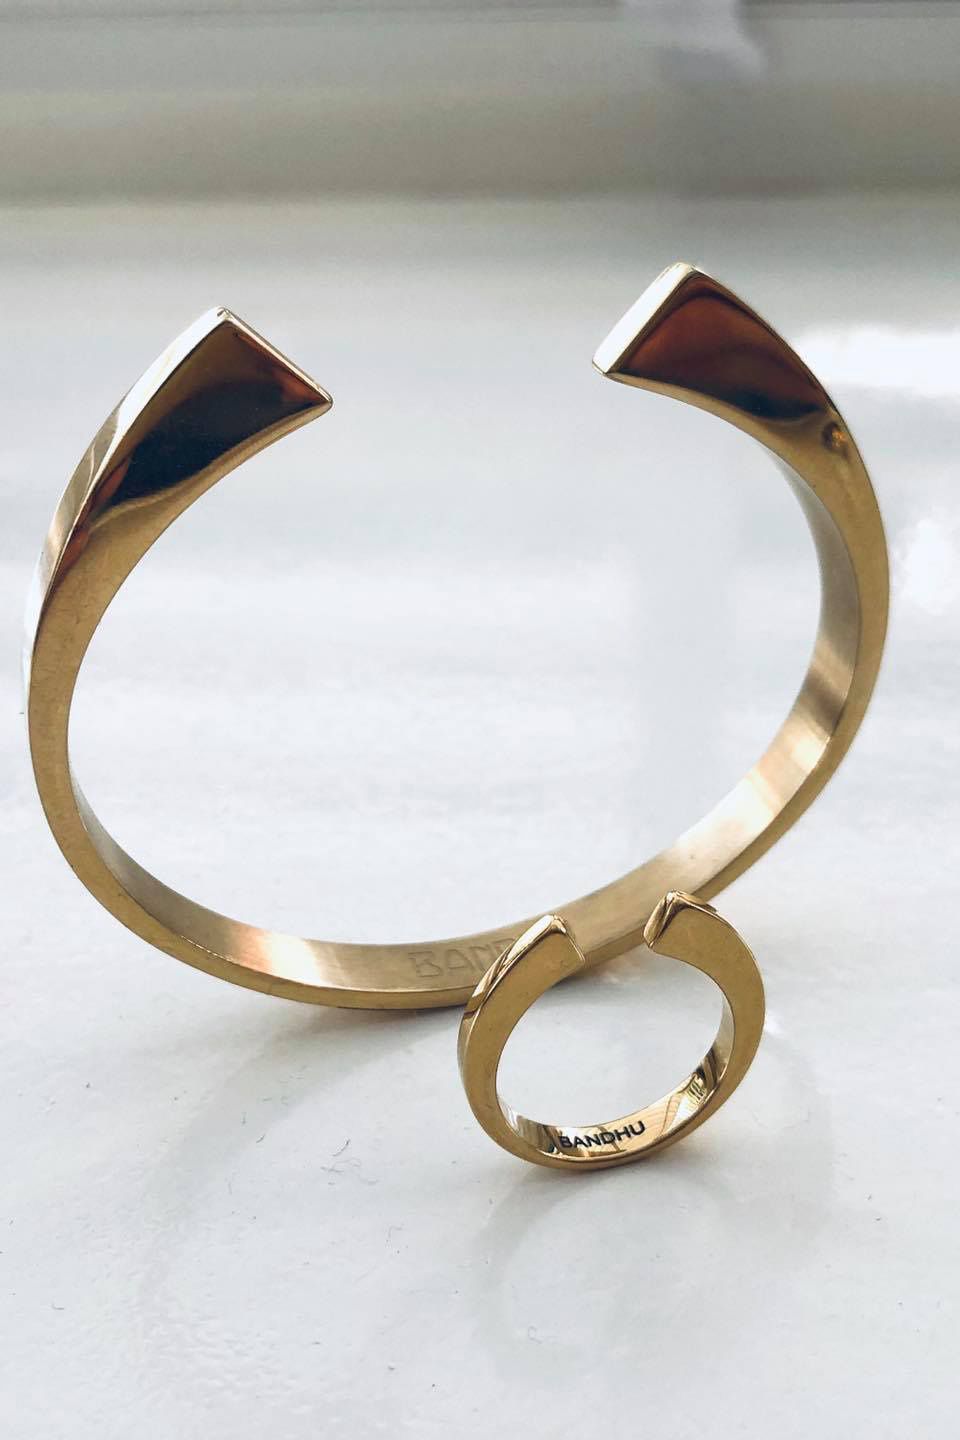 Bandhu Vinyasa Ring - Gold